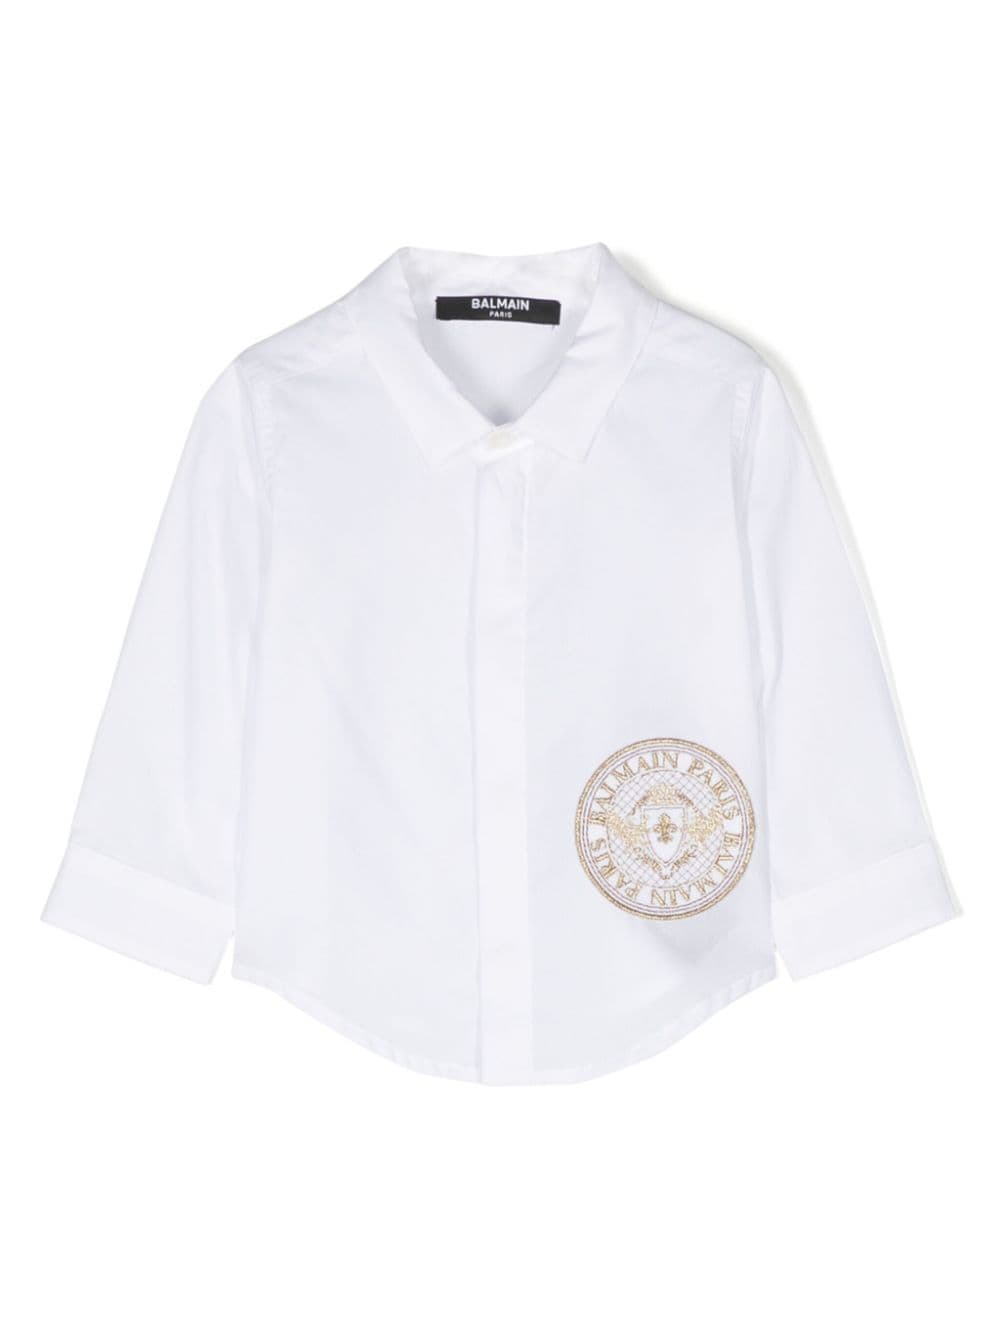 Camicia bianca bambino con logo